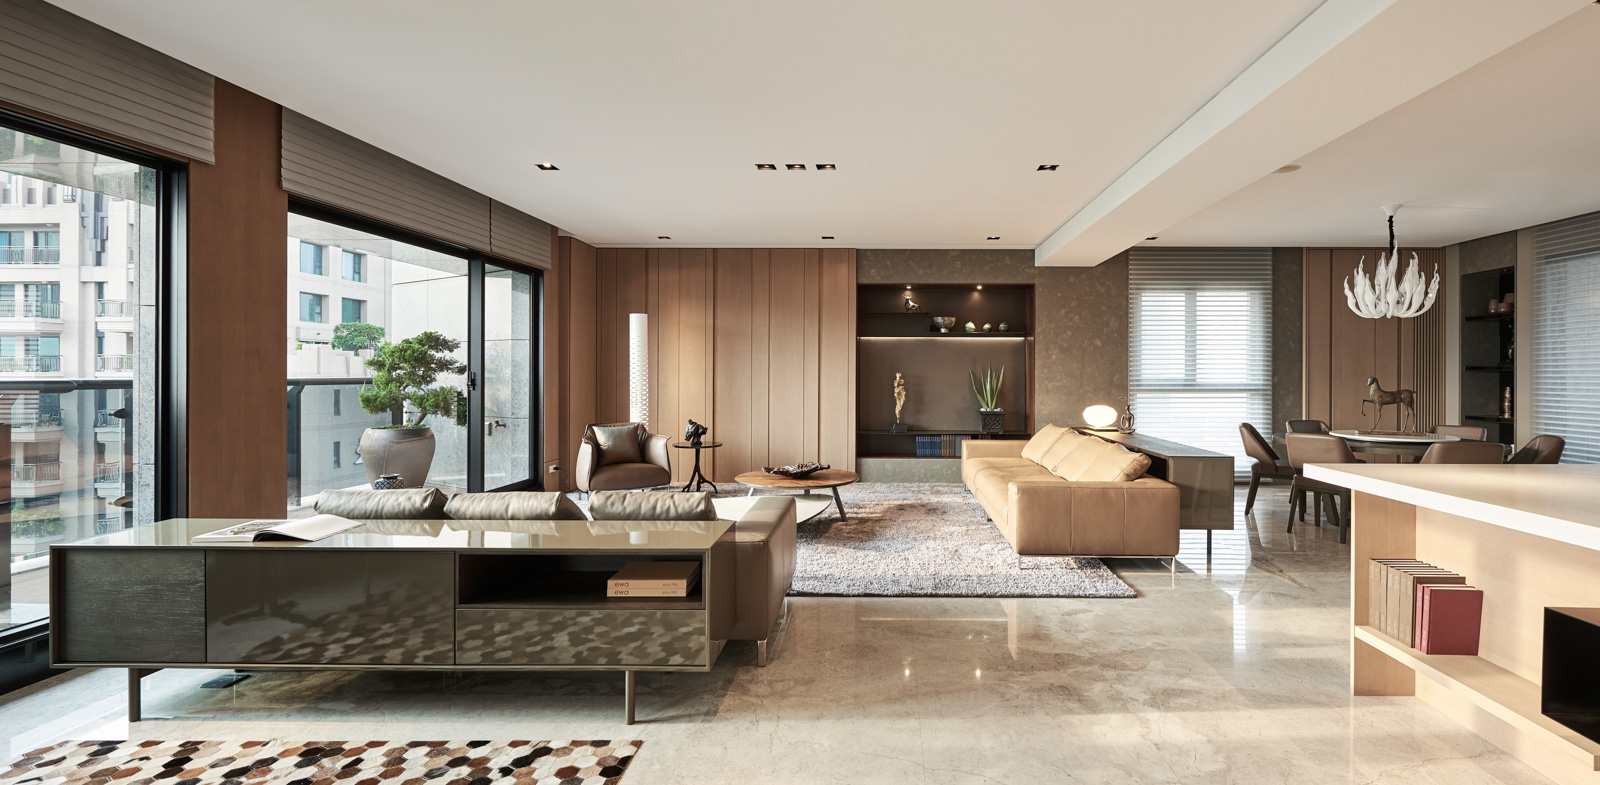 客厅米色的空间背景色显得十分温馨，客厅与餐厅一体化设计，空间更加自然舒适。